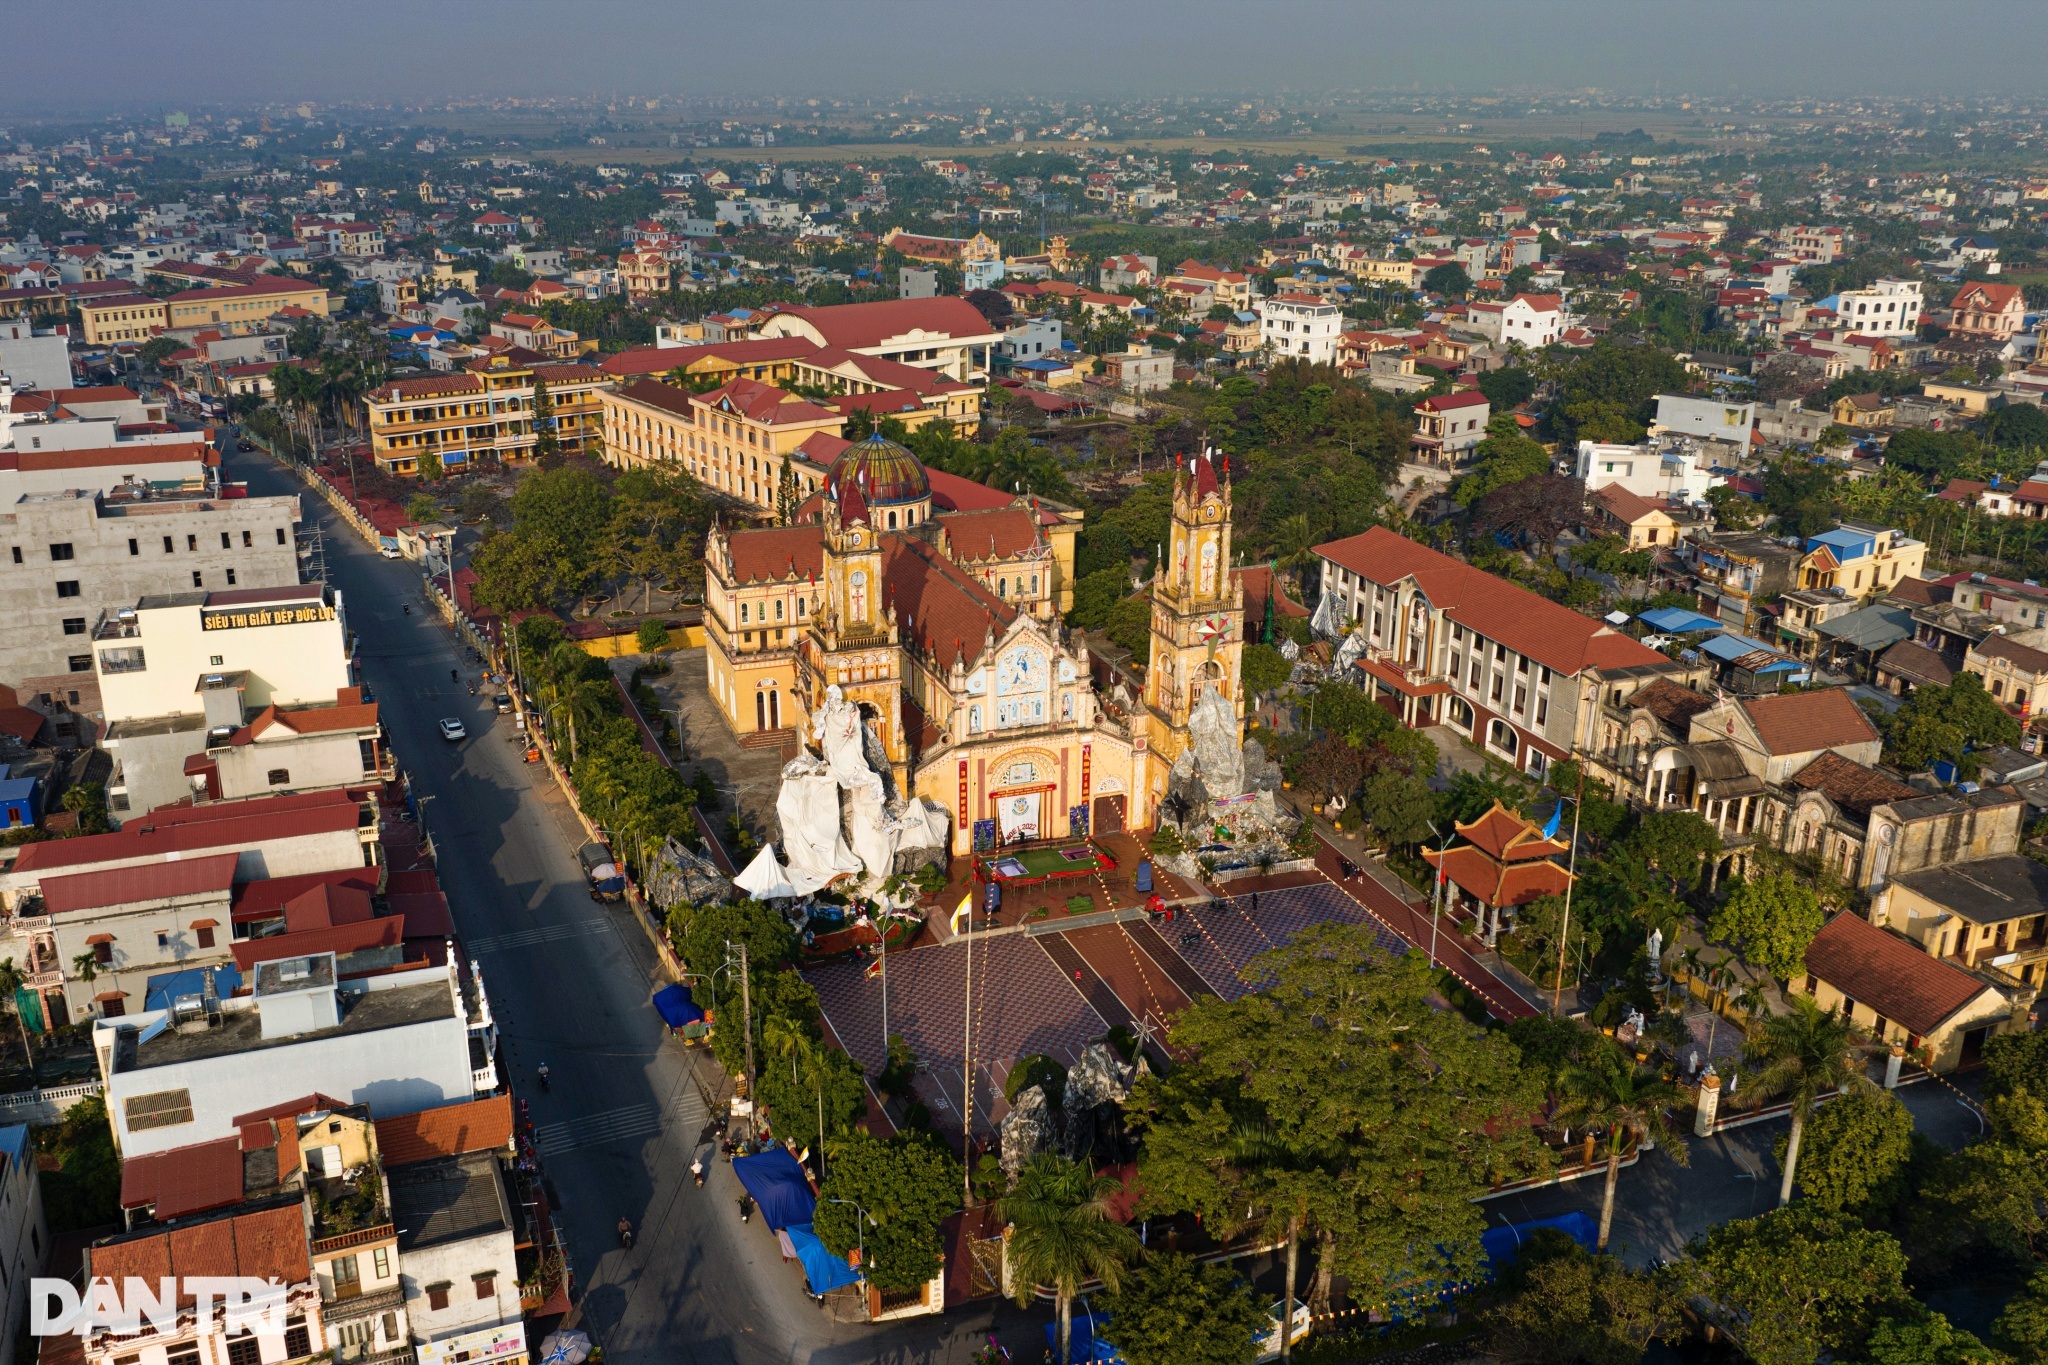 Xứ sở nhiều nhà thờ nhất Việt Nam trang hoàng lộng lẫy đón Giáng sinh - 16